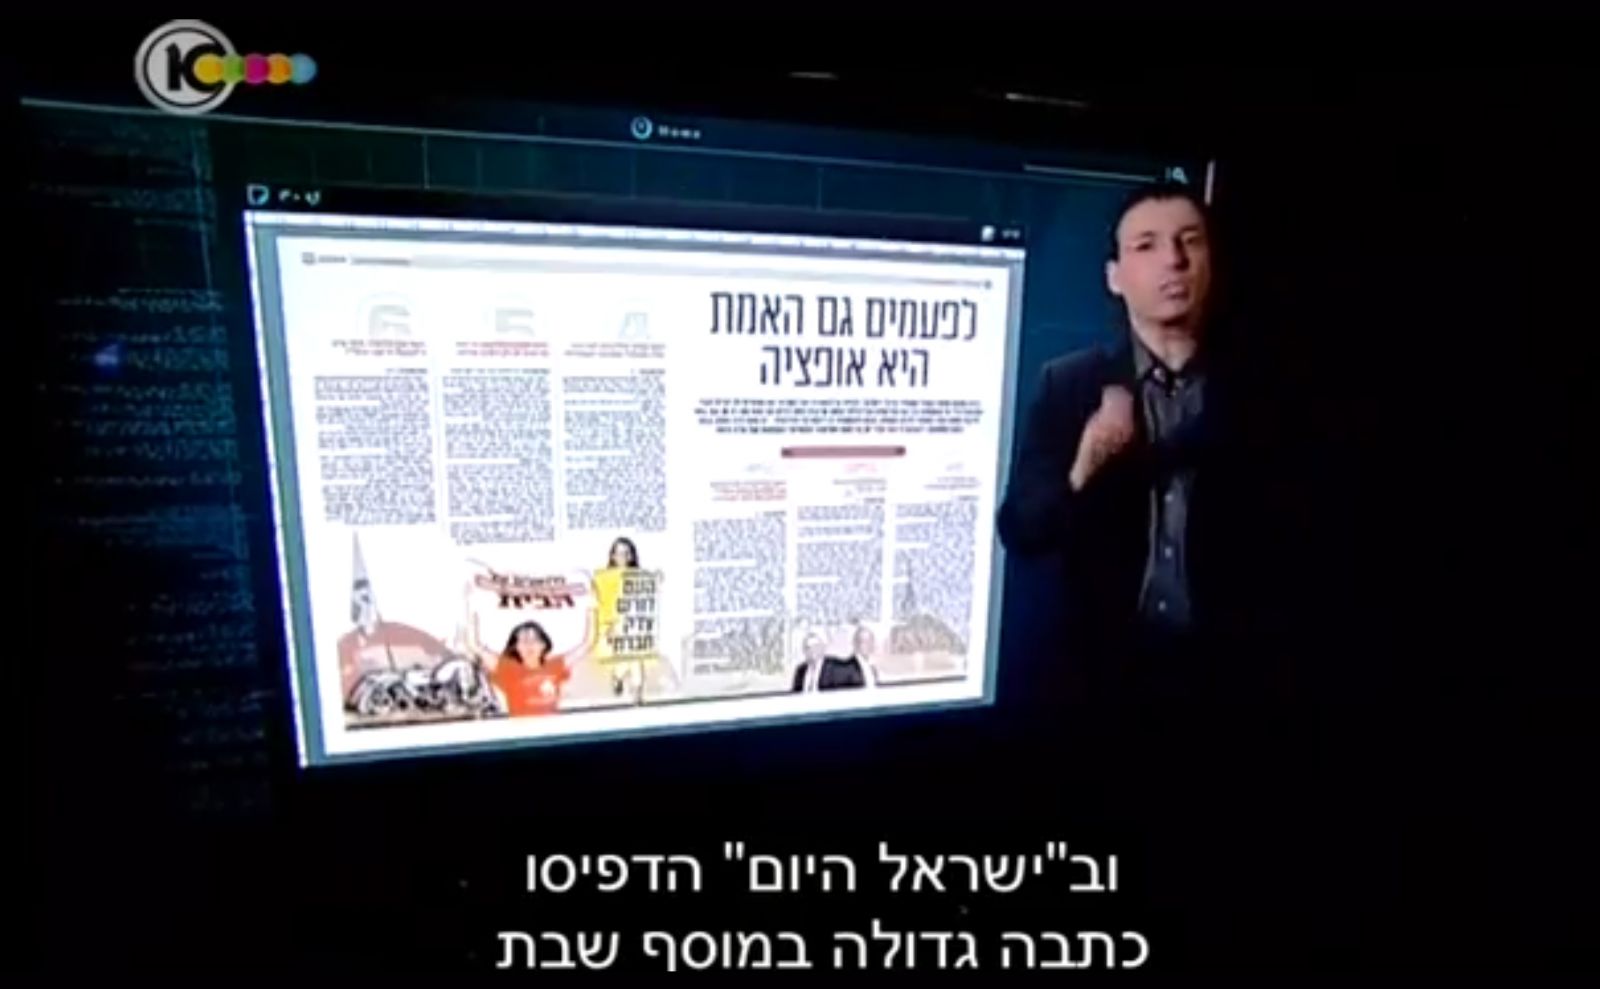 דרוקר, מתוך תחקיר "המקור" על "ישראל היום", 2013 (צילום מסך)